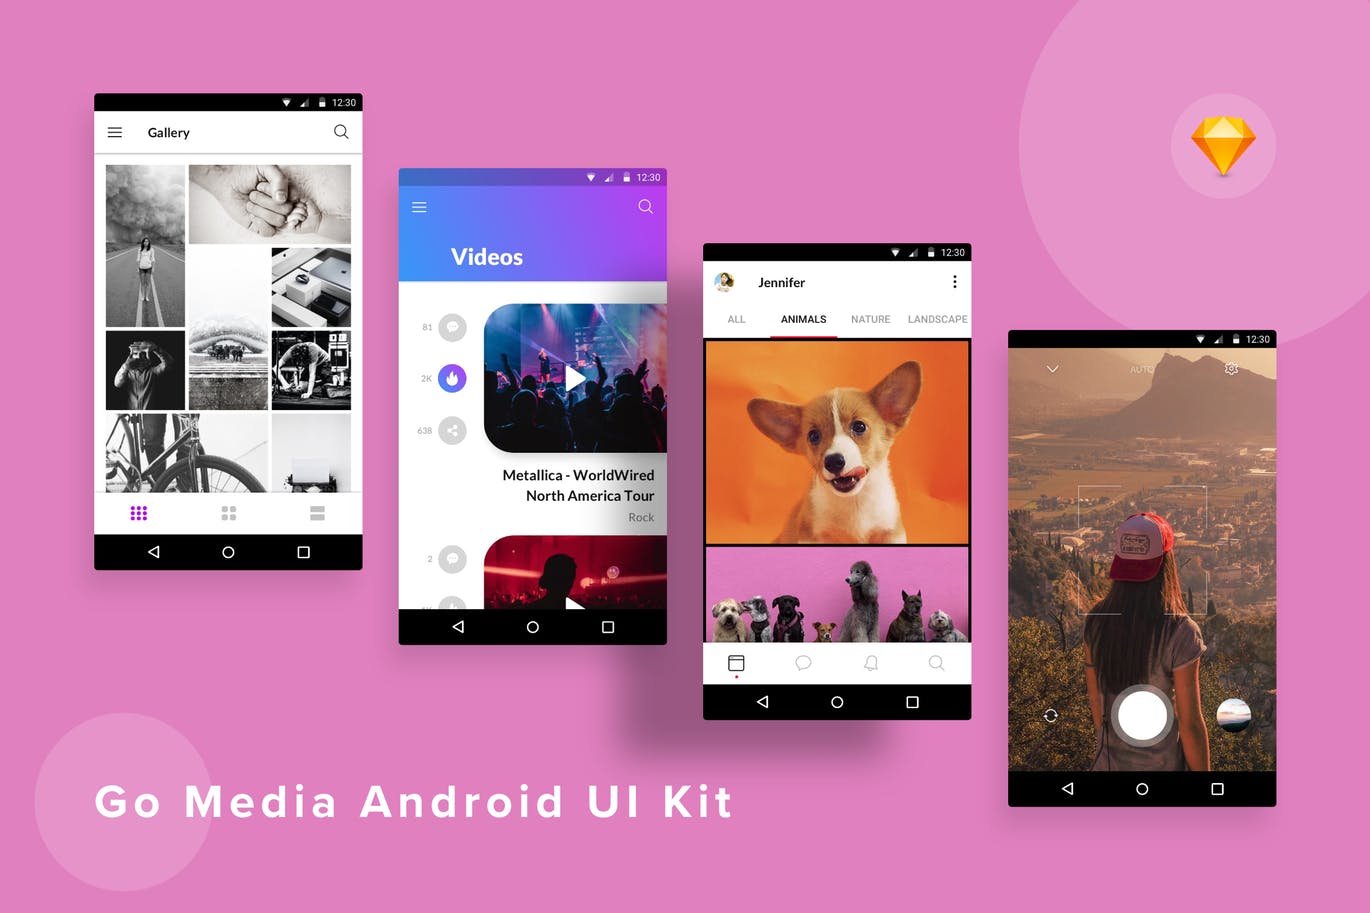 安卓手机多媒体相册APP应用UI设计第一素材精选套件SKETCH模板 GoMedia Android UI Kit (Sketch)插图